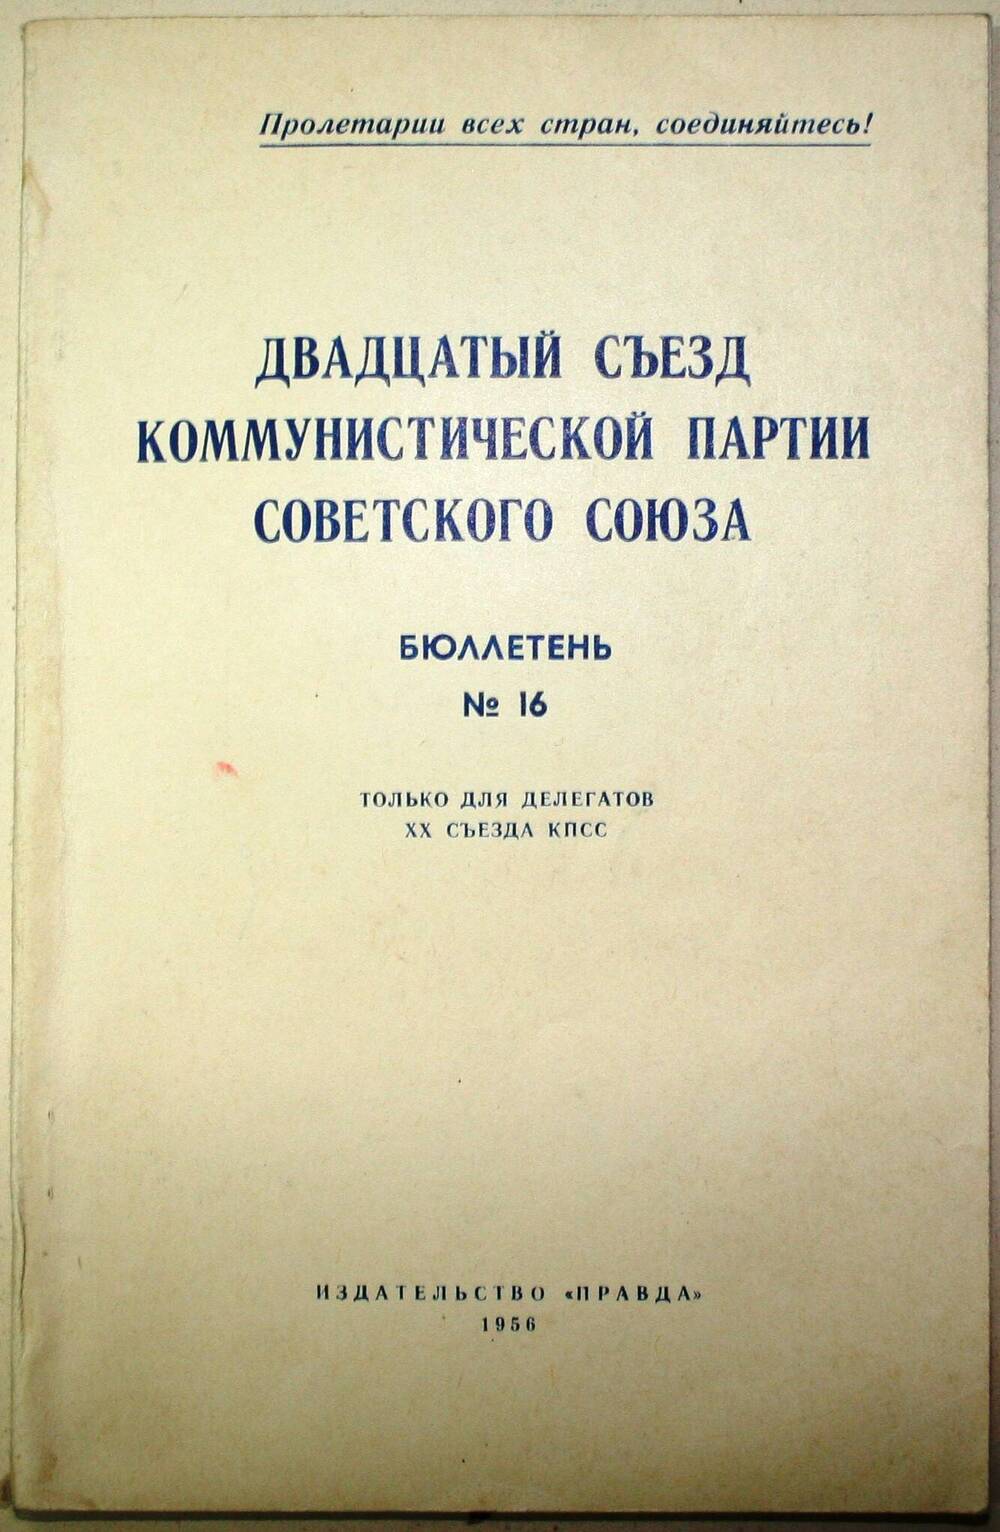 Бюллетень №16. Двадцатый съезд коммунистической партии Советского Союза.